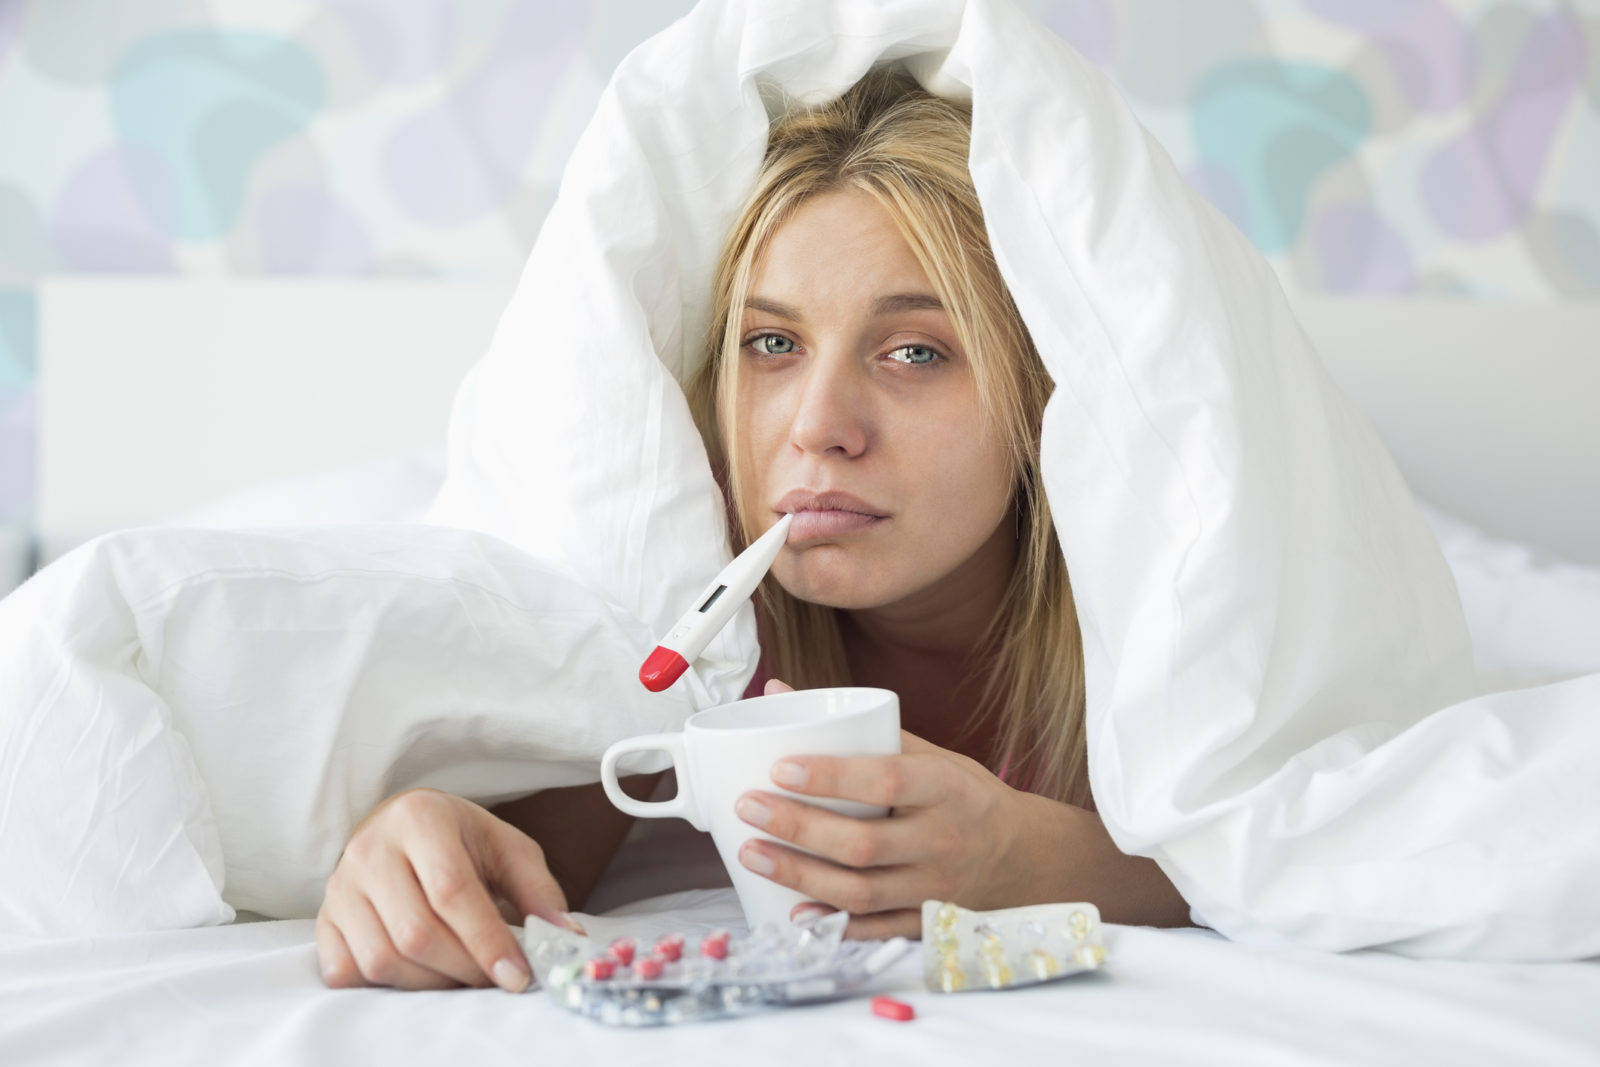 Борьба с простудой: стратегии для скорейшего выздоровления